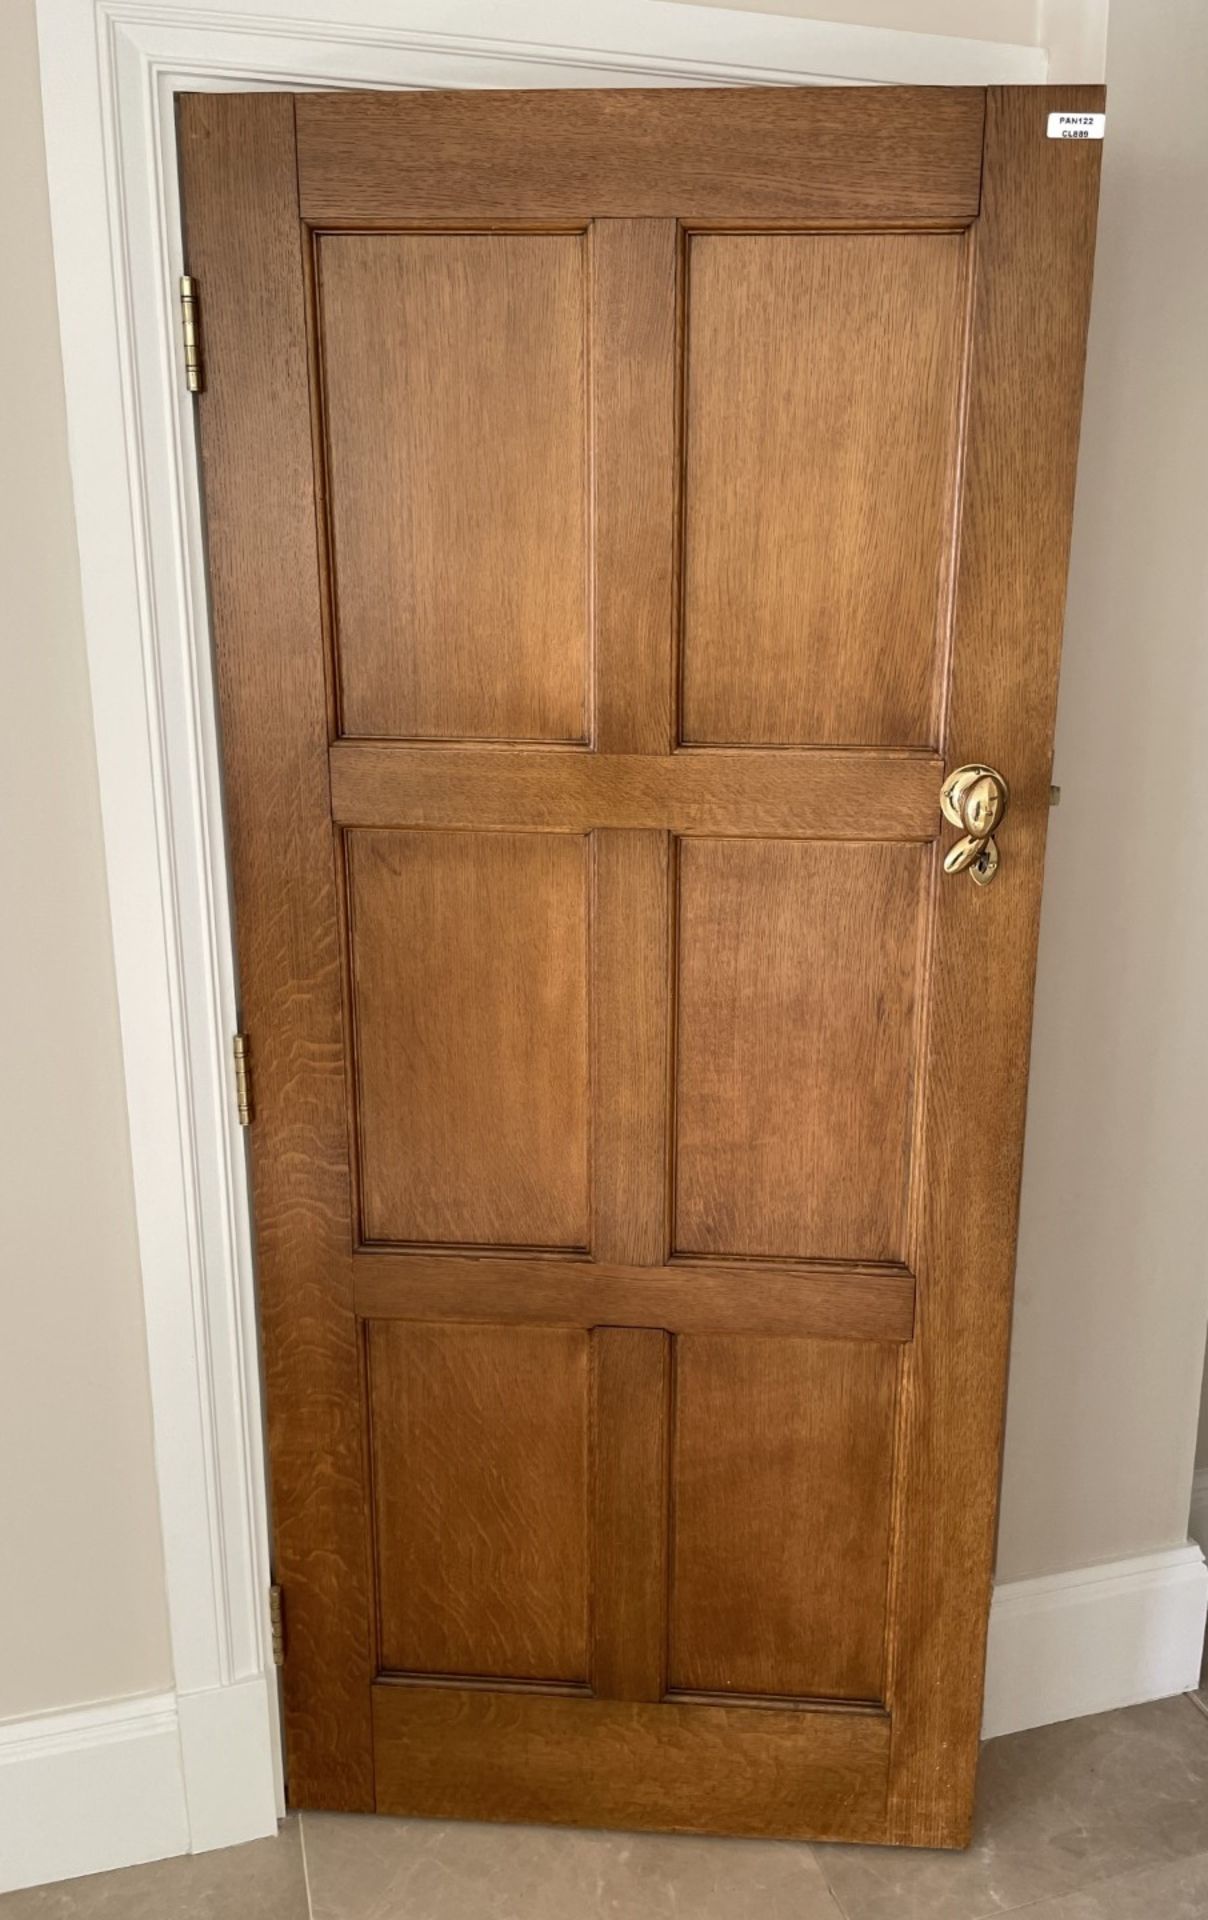 1 x Solid Wood Lockable Internal Door - Includes Handles and Hinges - Ref: PAN122 - NO VAT